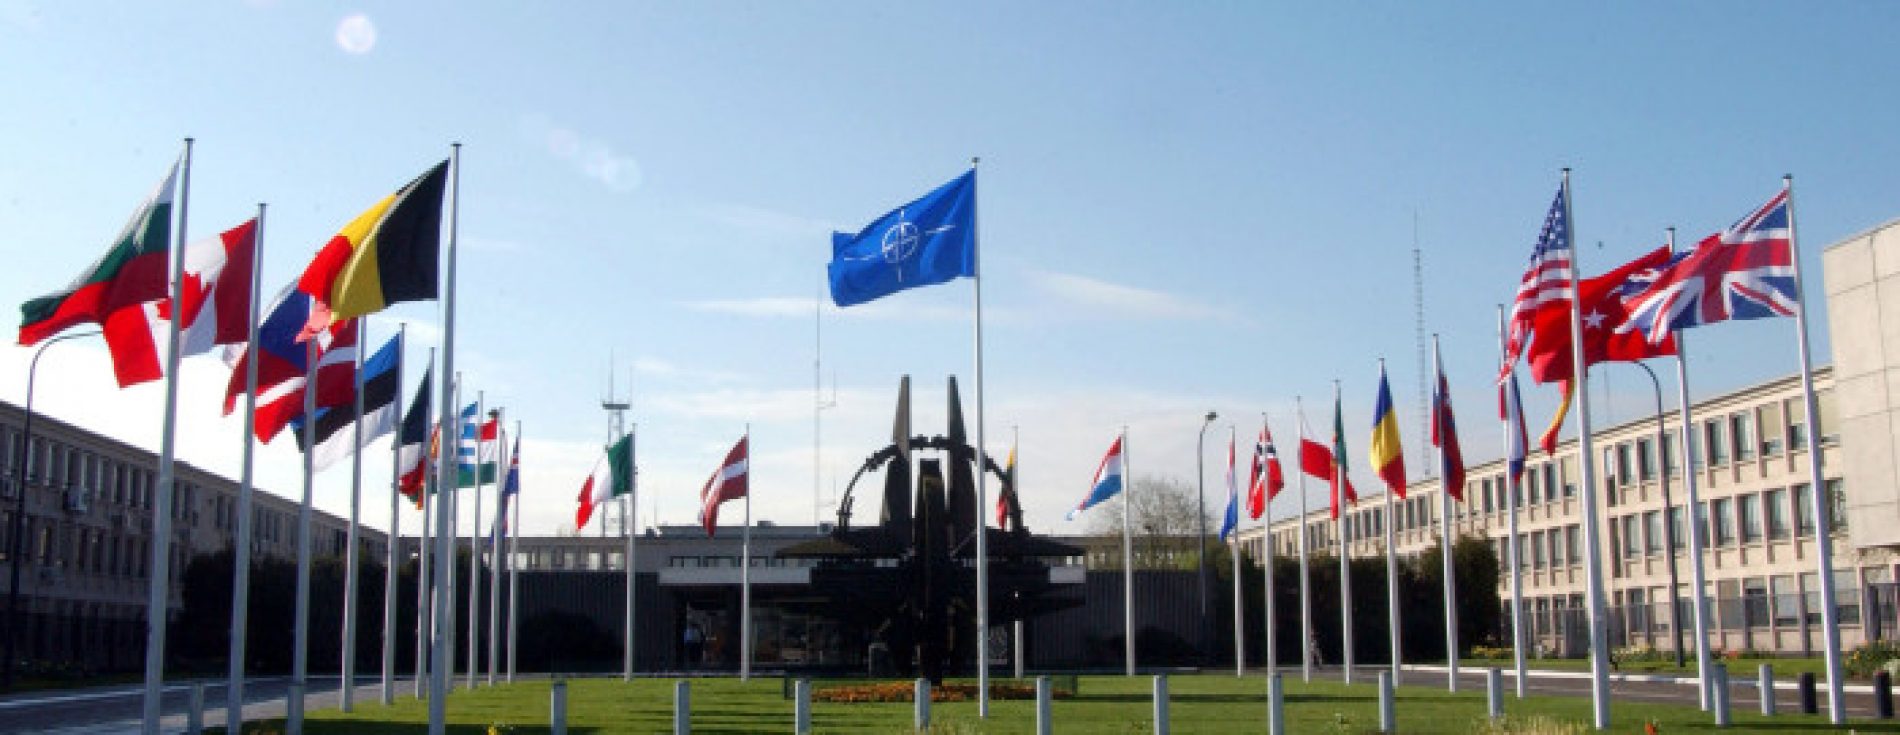 Helsinški odbor: Ako se SAD, EU i NATO ne vrate na Balkan, Srbija će ga trajno destabilizovati